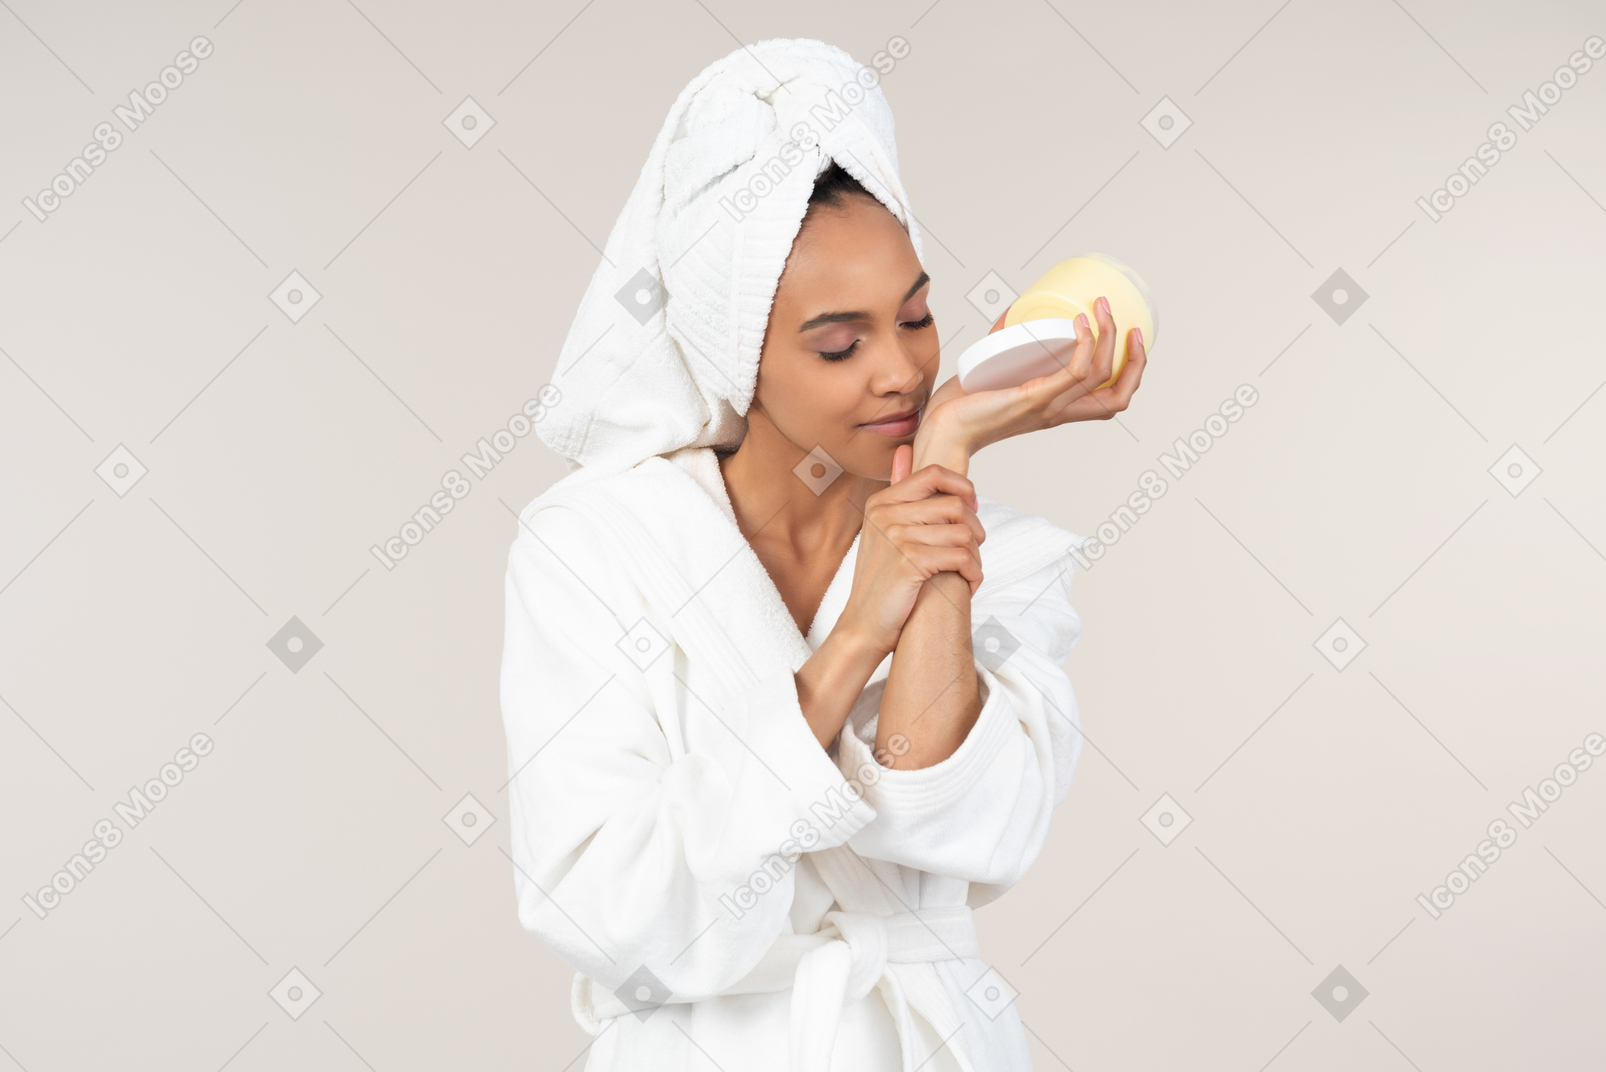 白色浴袍和头巾的黑人妇女享受她的护肤惯例